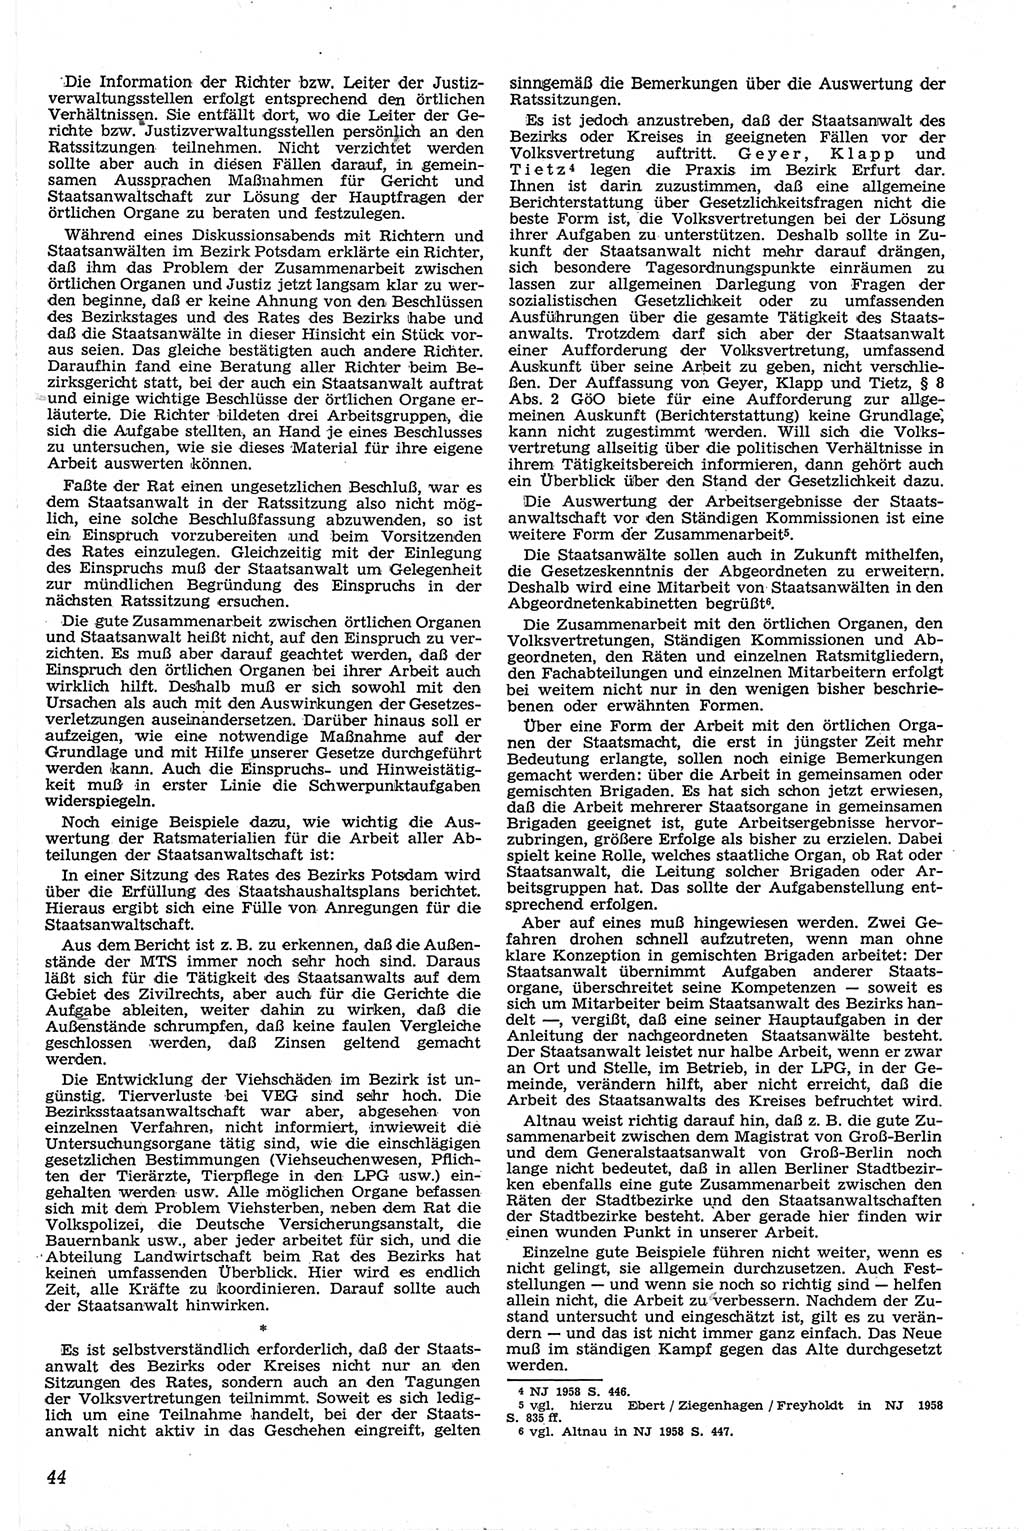 Neue Justiz (NJ), Zeitschrift für Recht und Rechtswissenschaft [Deutsche Demokratische Republik (DDR)], 13. Jahrgang 1959, Seite 44 (NJ DDR 1959, S. 44)